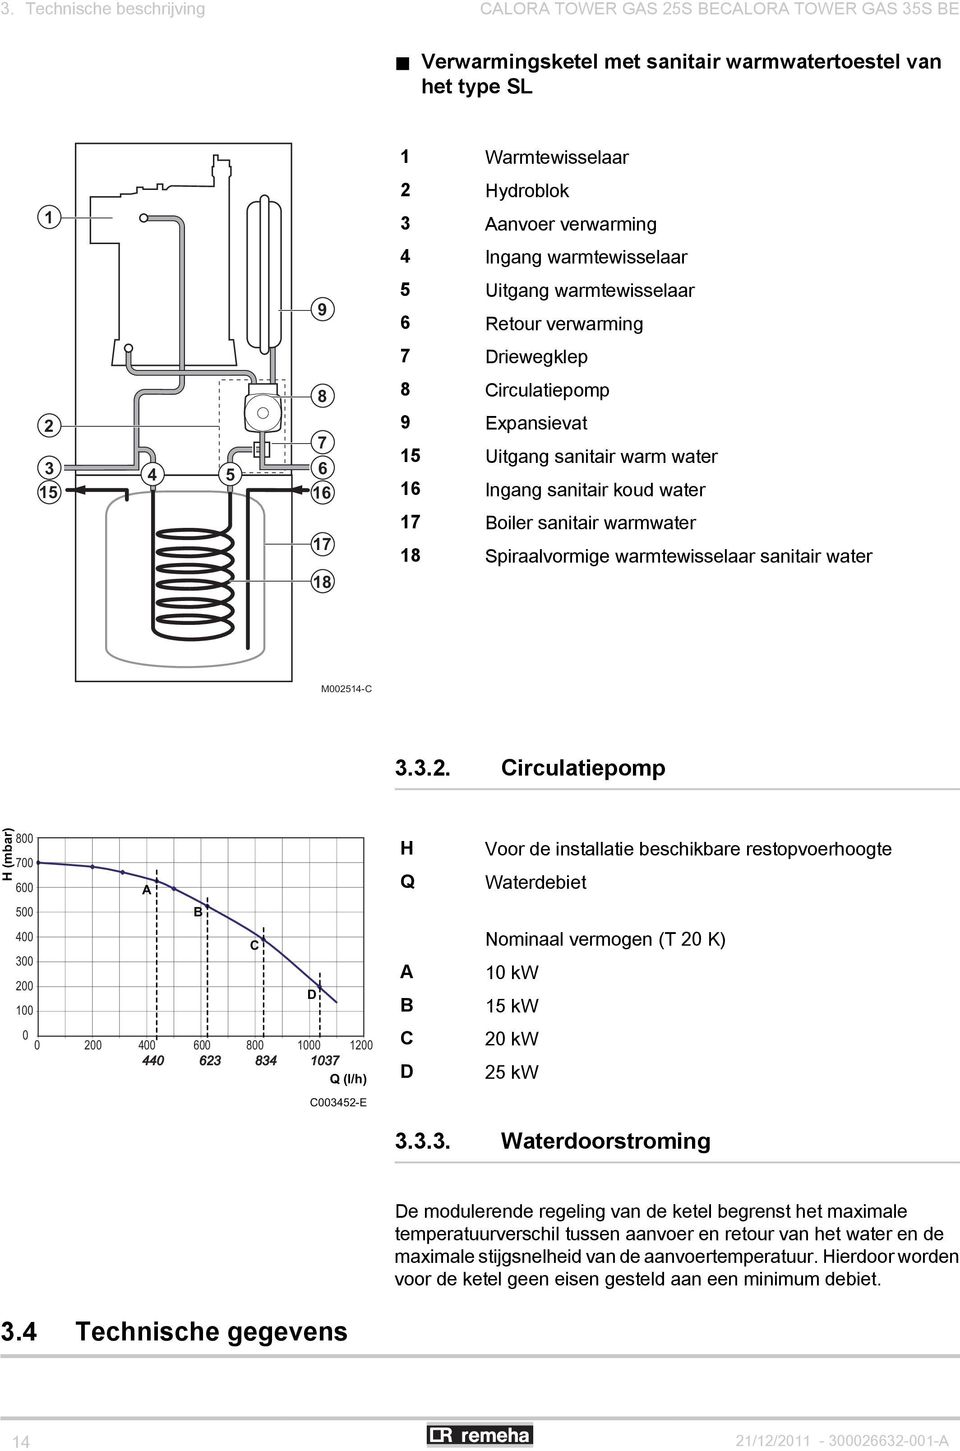 Boiler sanitair warmwater 18 Spiraalvormige warmtewisselaar sanitair water M0025